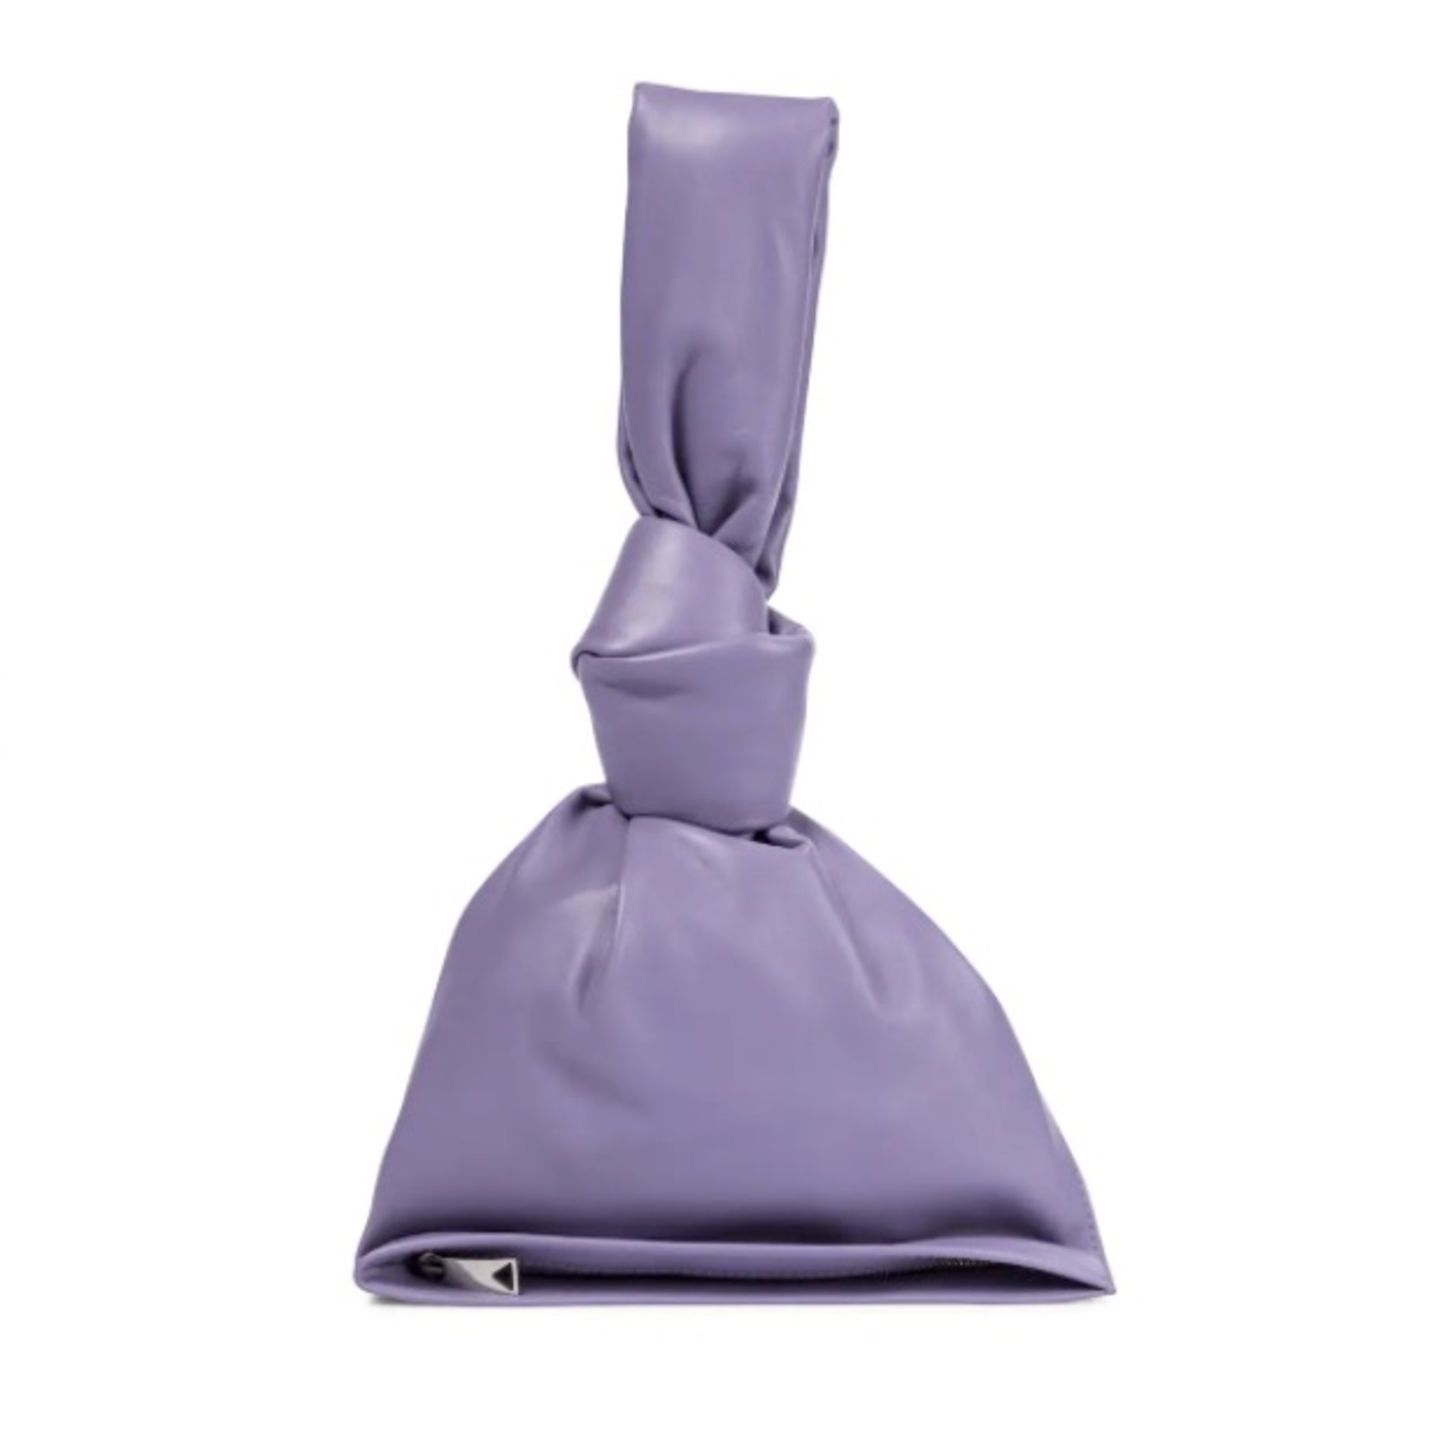 Die Mini Twist von Bottega Veneta shoppen wir natürlich auch in der Trendfarbe 2022. Damit verleihen wir jedem noch so langweiligen Look ein stylisches Upgrade! Tasche von Bottega Veneta via Mytheresa, kostet 980 Euro.